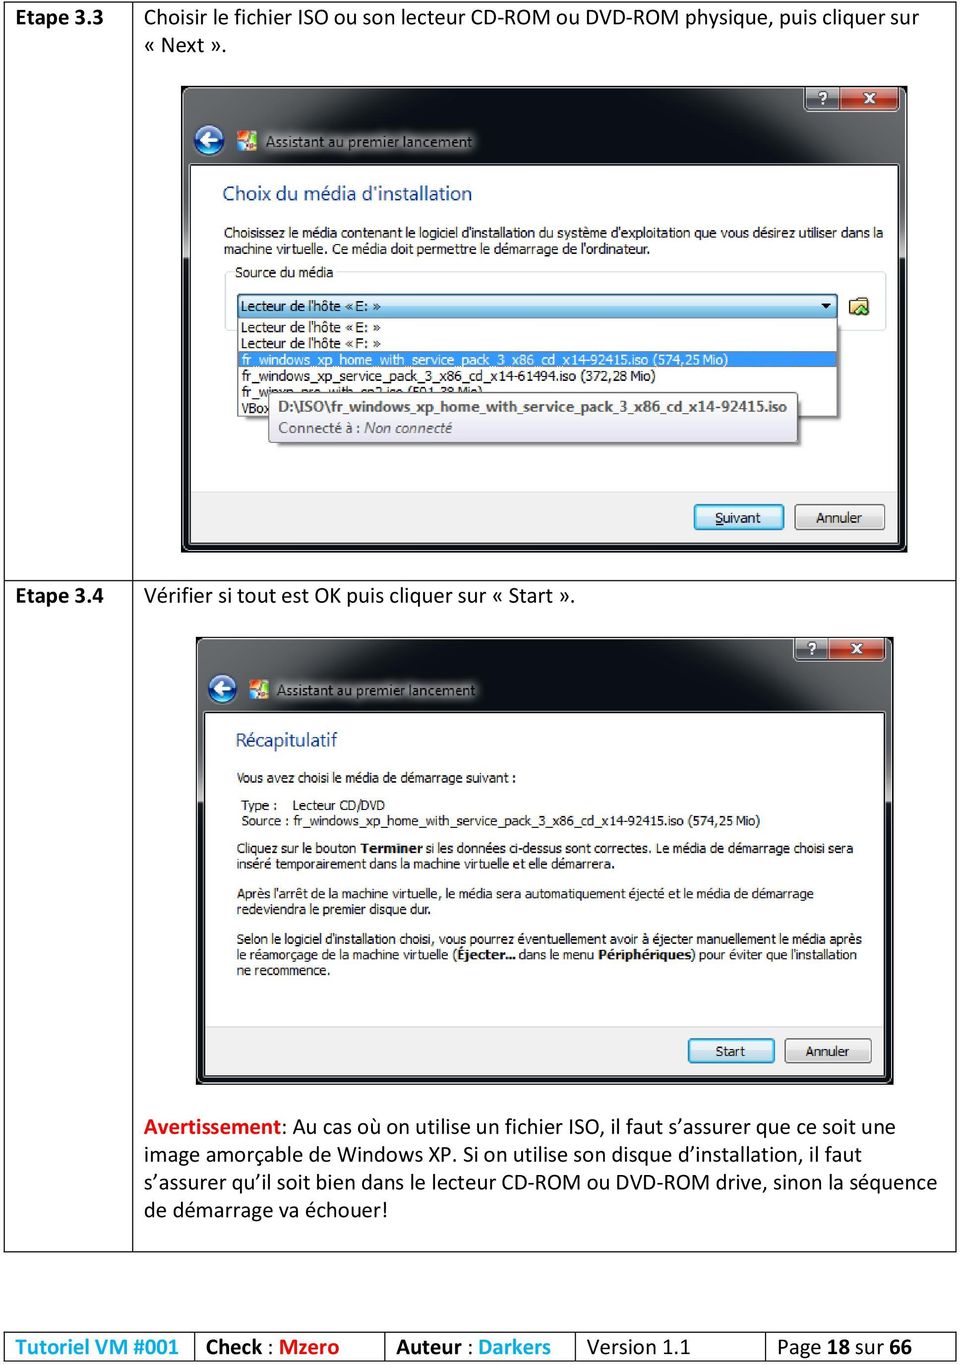 Avertissement: Au cas où on utilise un fichier ISO, il faut s assurer que ce soit une image amorçable de Windows XP.